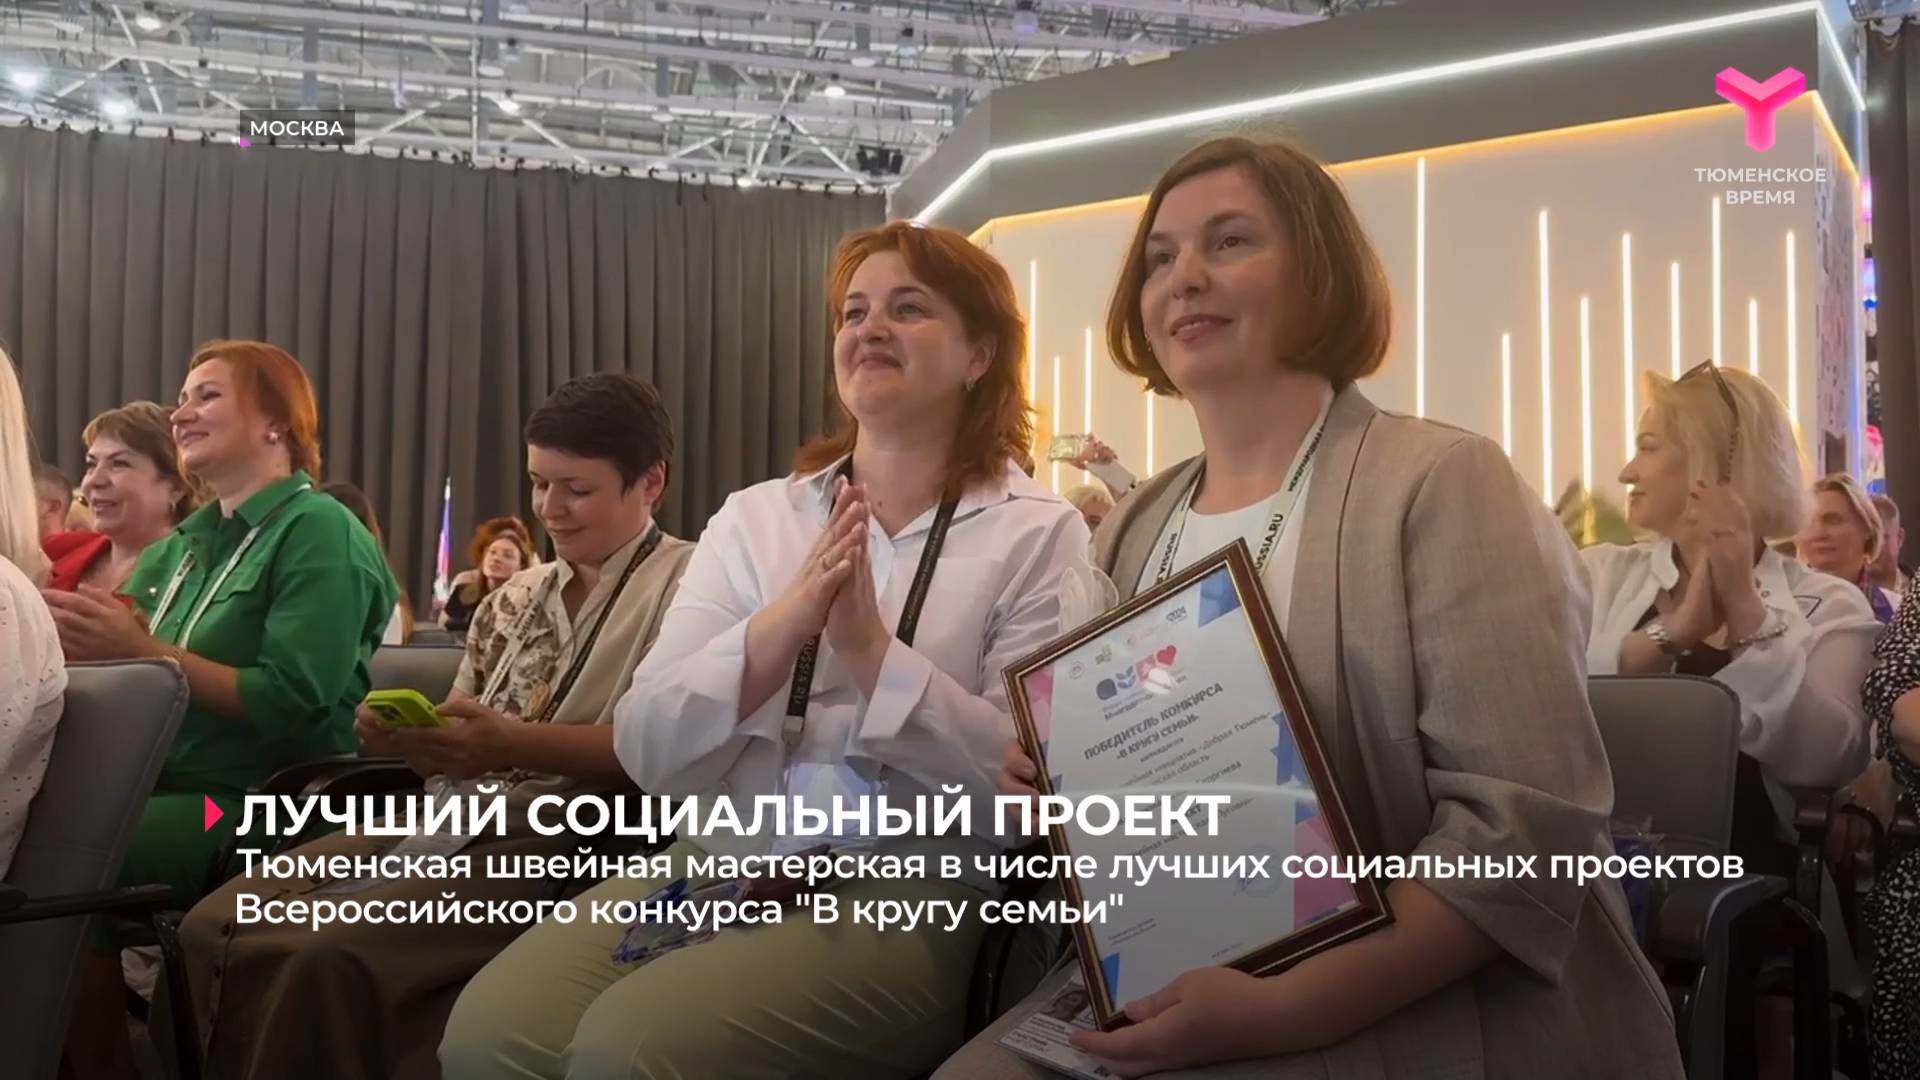 Тюменская швейная мастерская в числе лучших социальных проектов Всероссийского конкурса